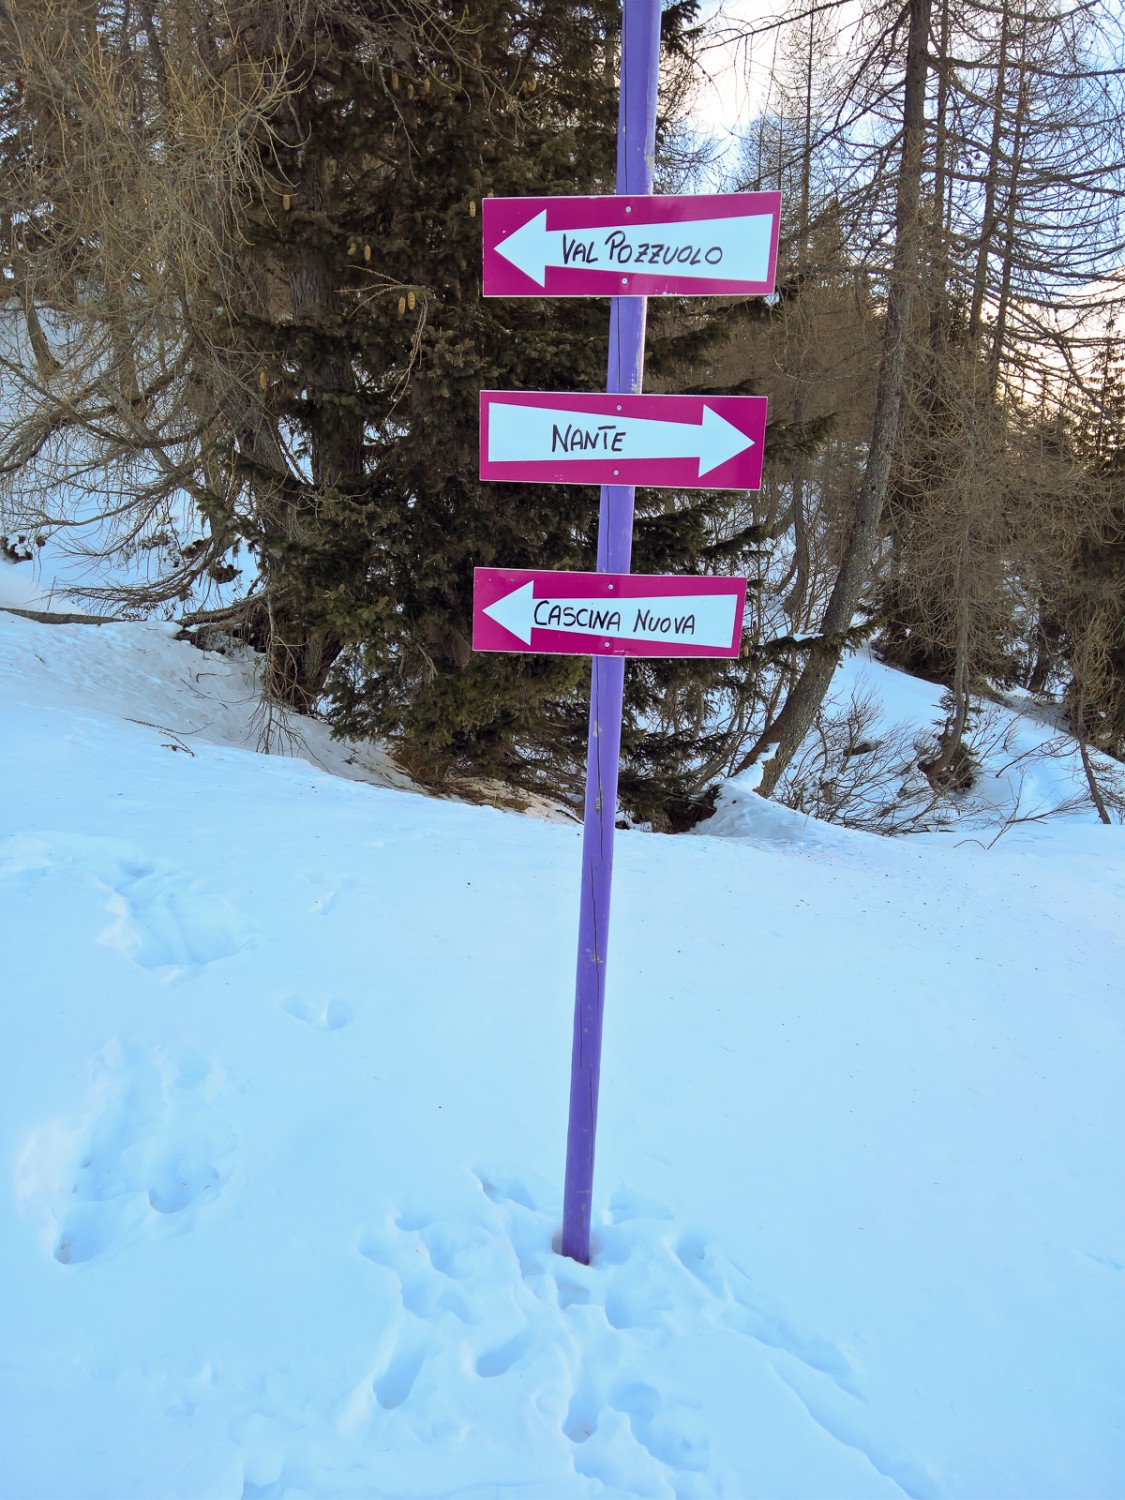 Der Verlauf der Route wird mit violetten Stangen und pinkfarbigen Tafeln angezeigt. Bild: Andreas Staeger